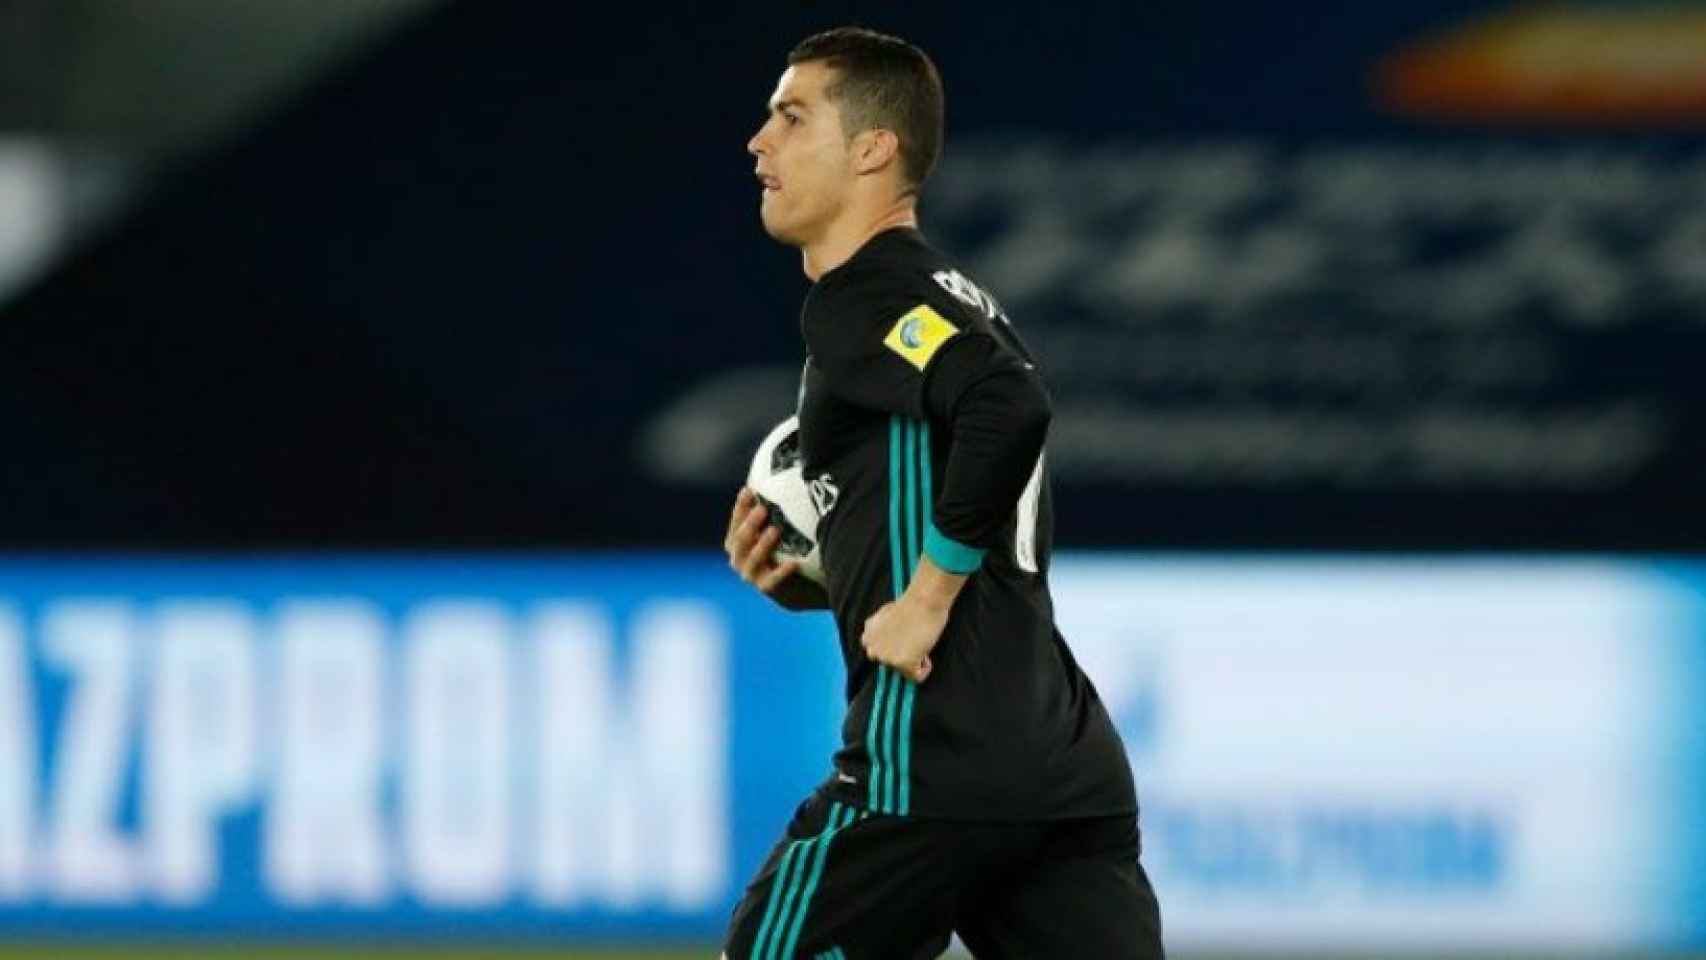 Cristiano marca el gol al Al Jazira